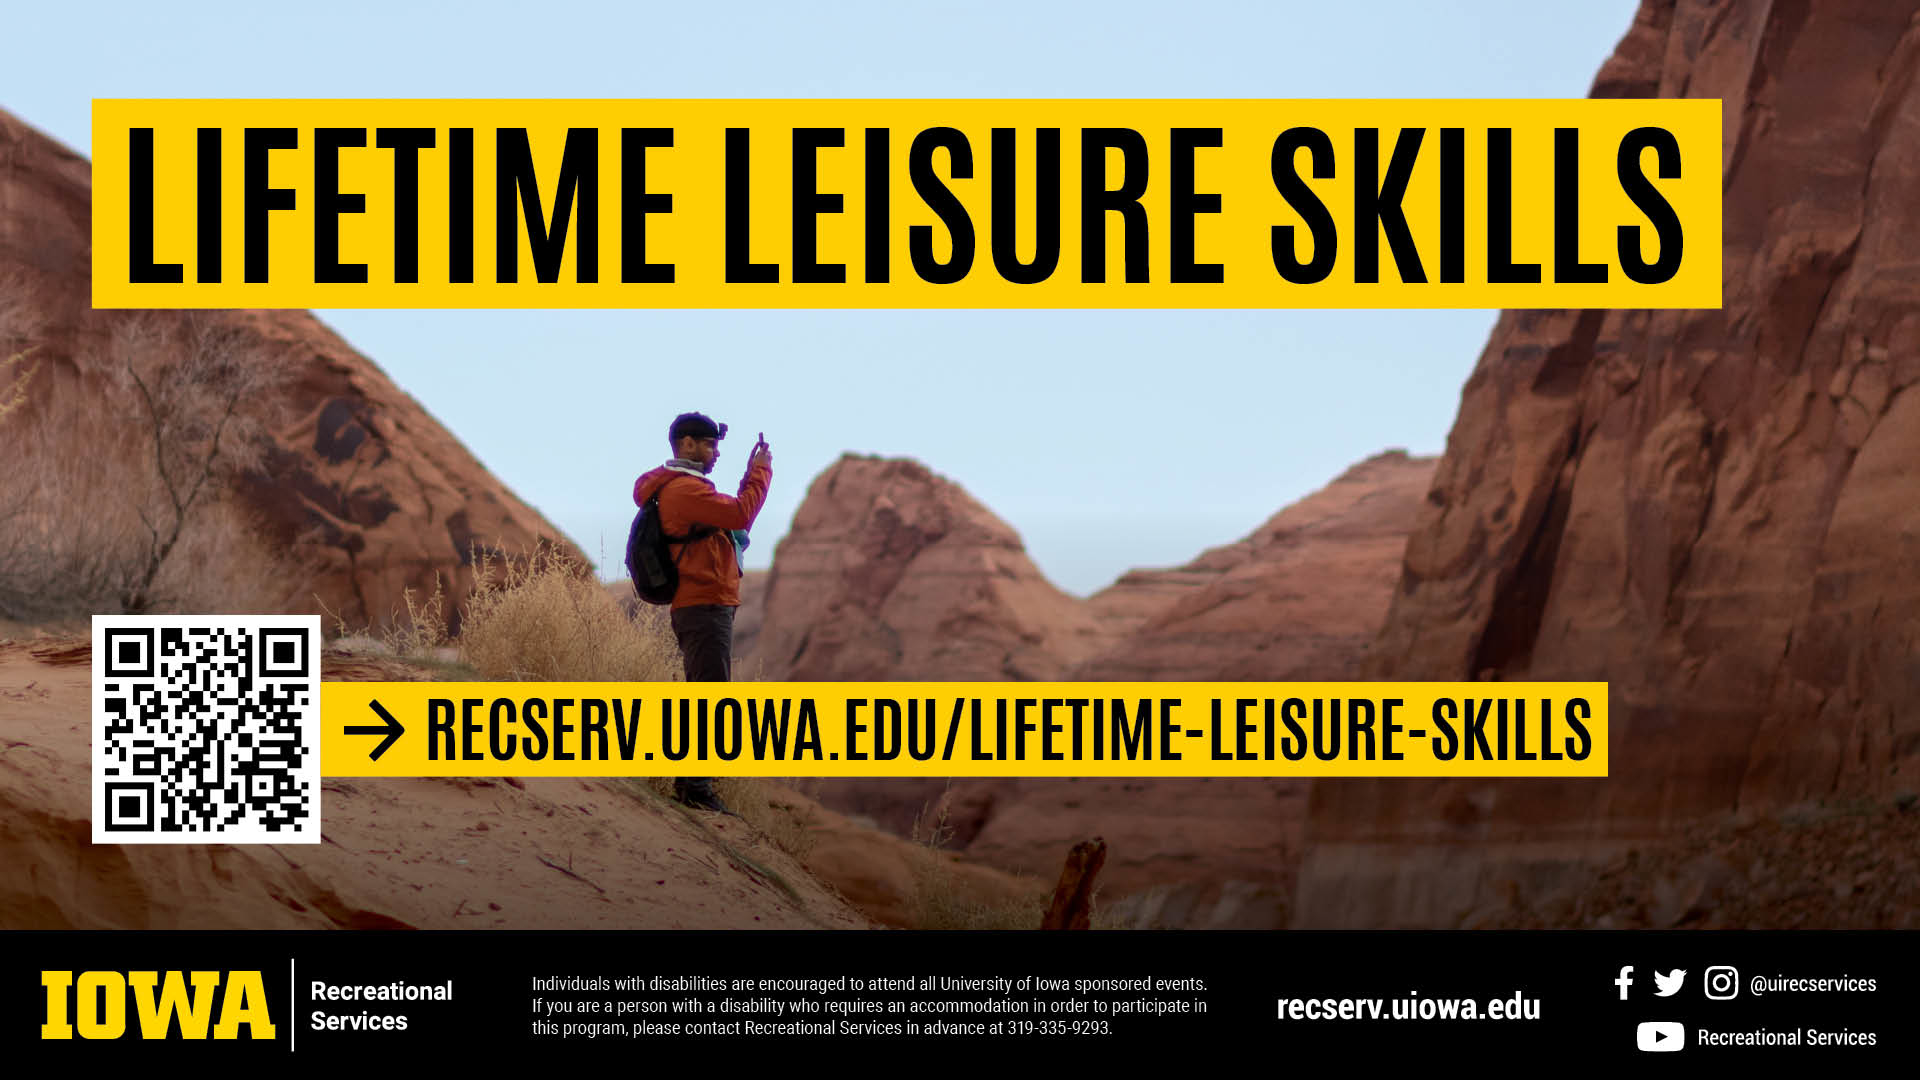 recserv.uiowa.edu/lifetime-leisure-skills